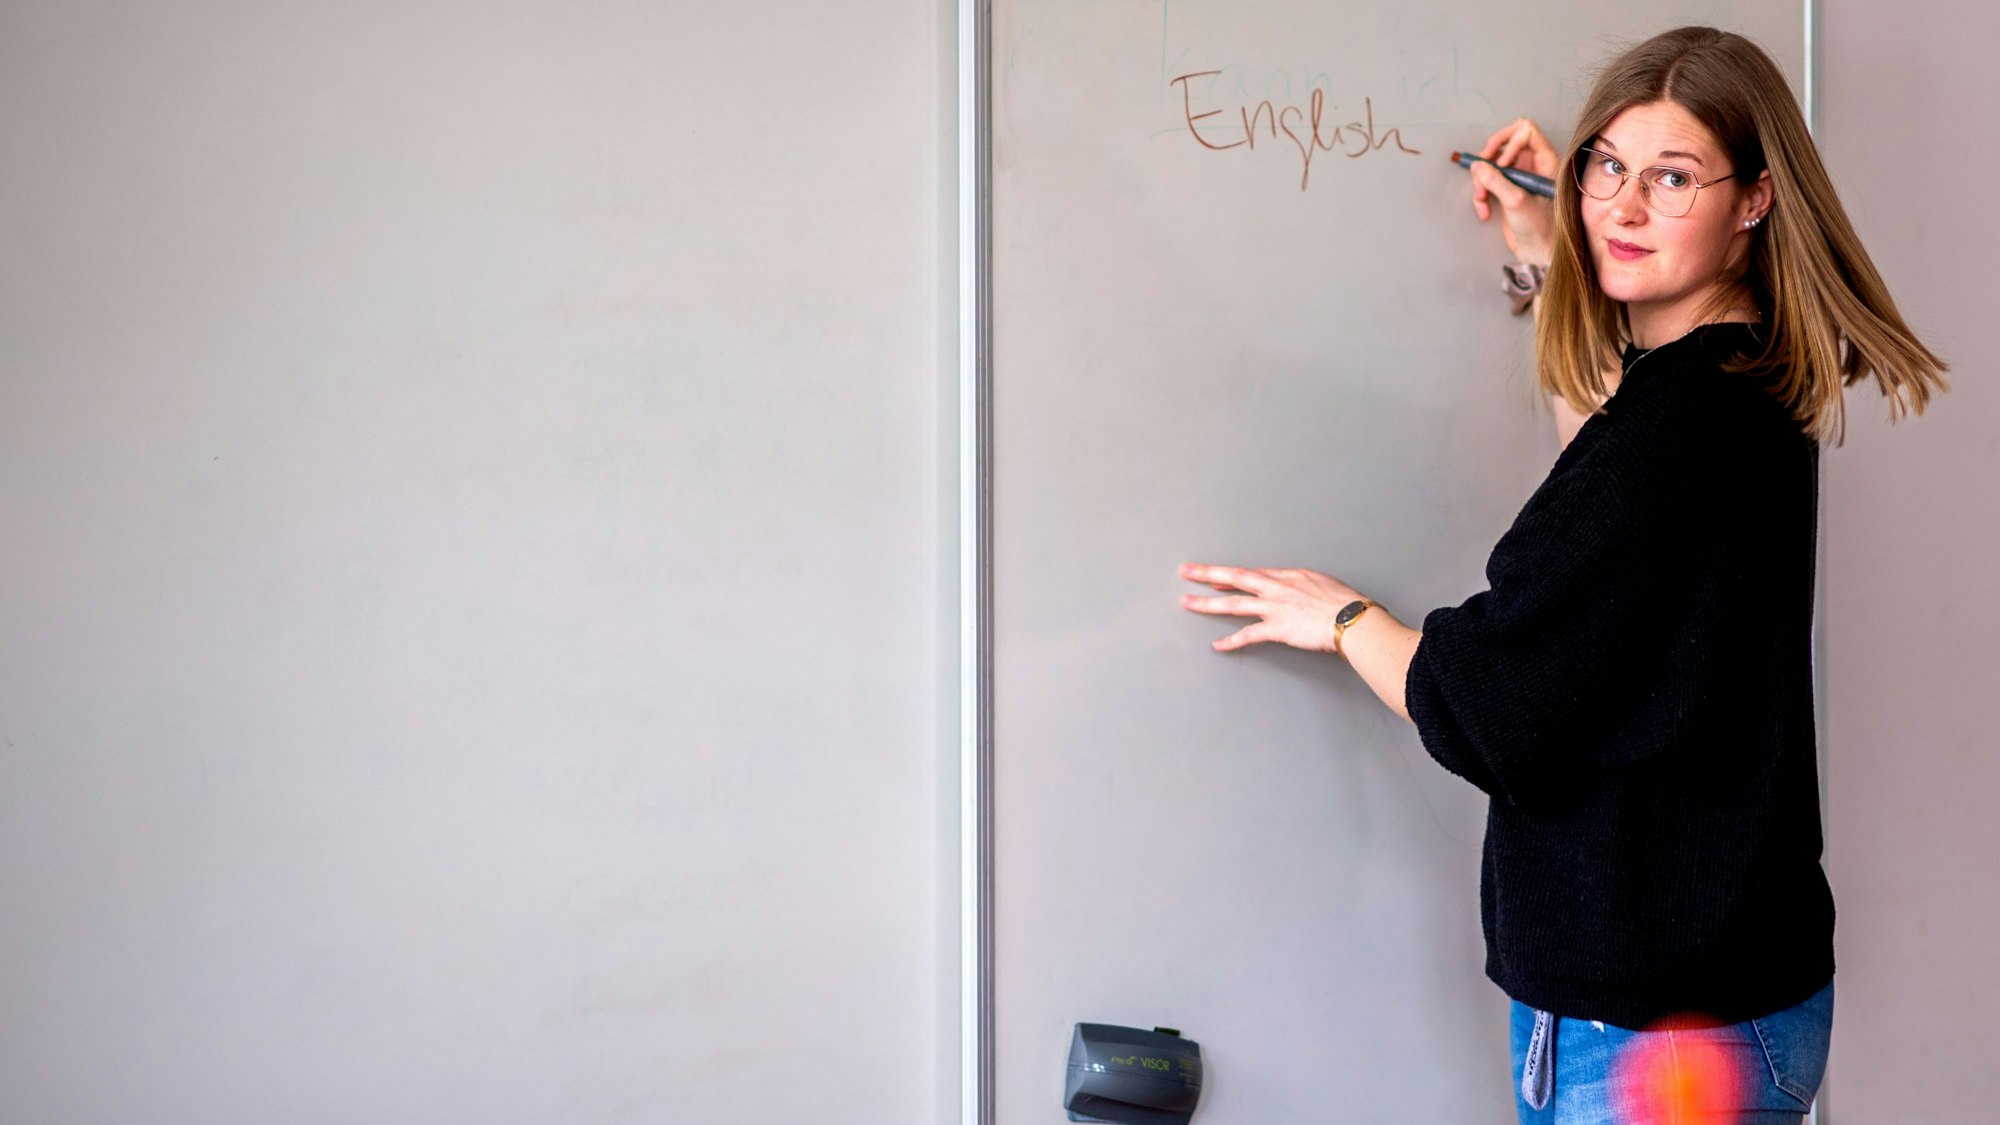 Die Euskirchener Lehrerin Alina Heuschkel steht an einer Tafel und schreibt das Wort English.